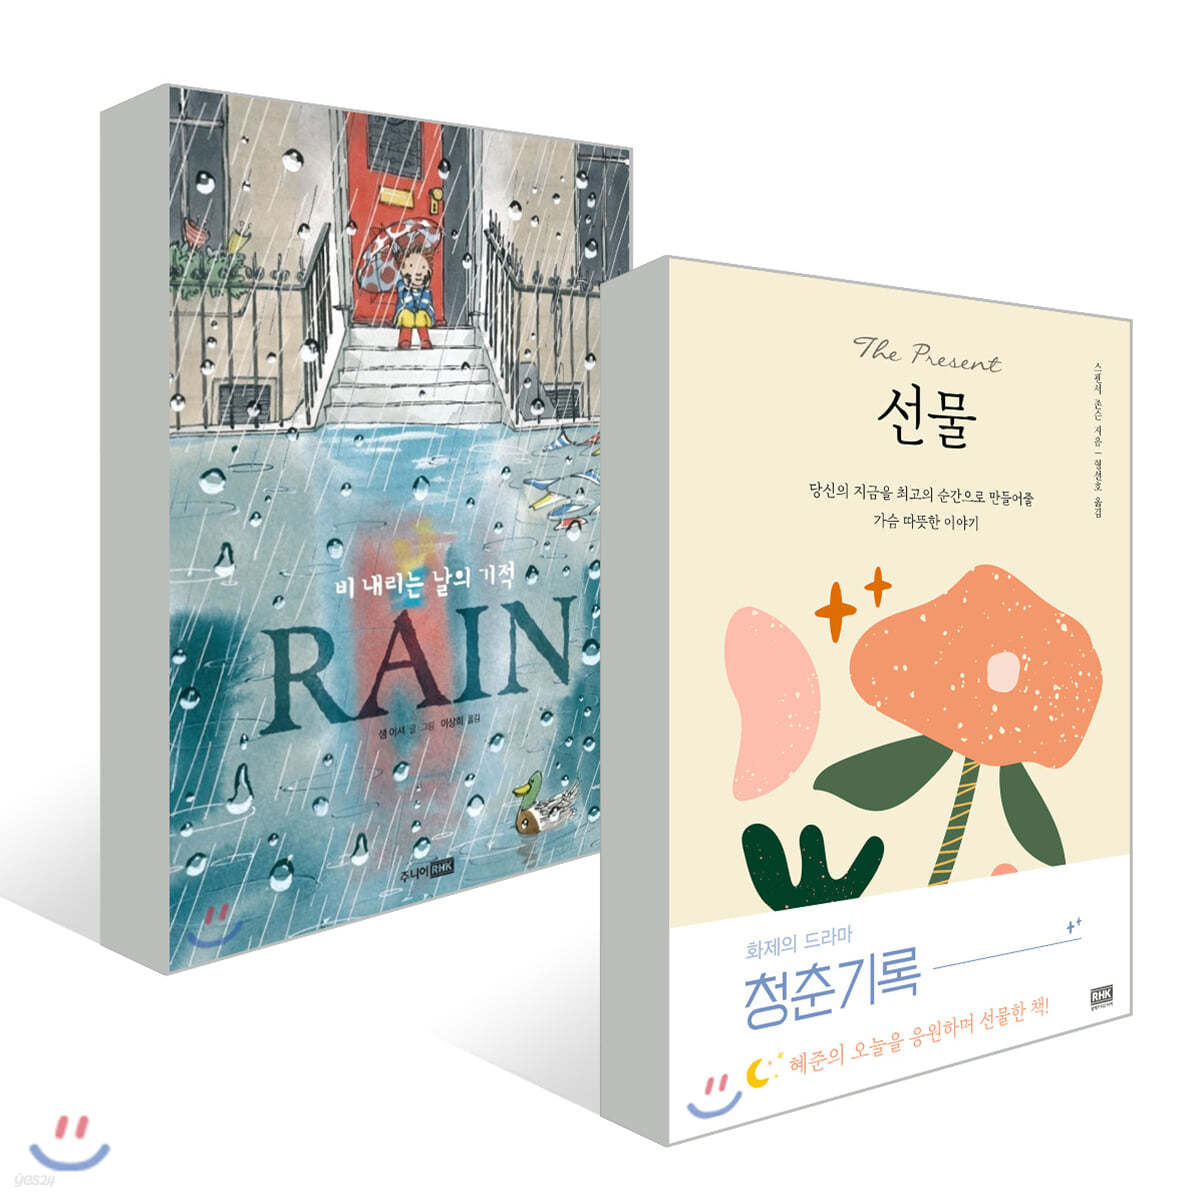 선물 (스페셜 에디션) + Rain 레인